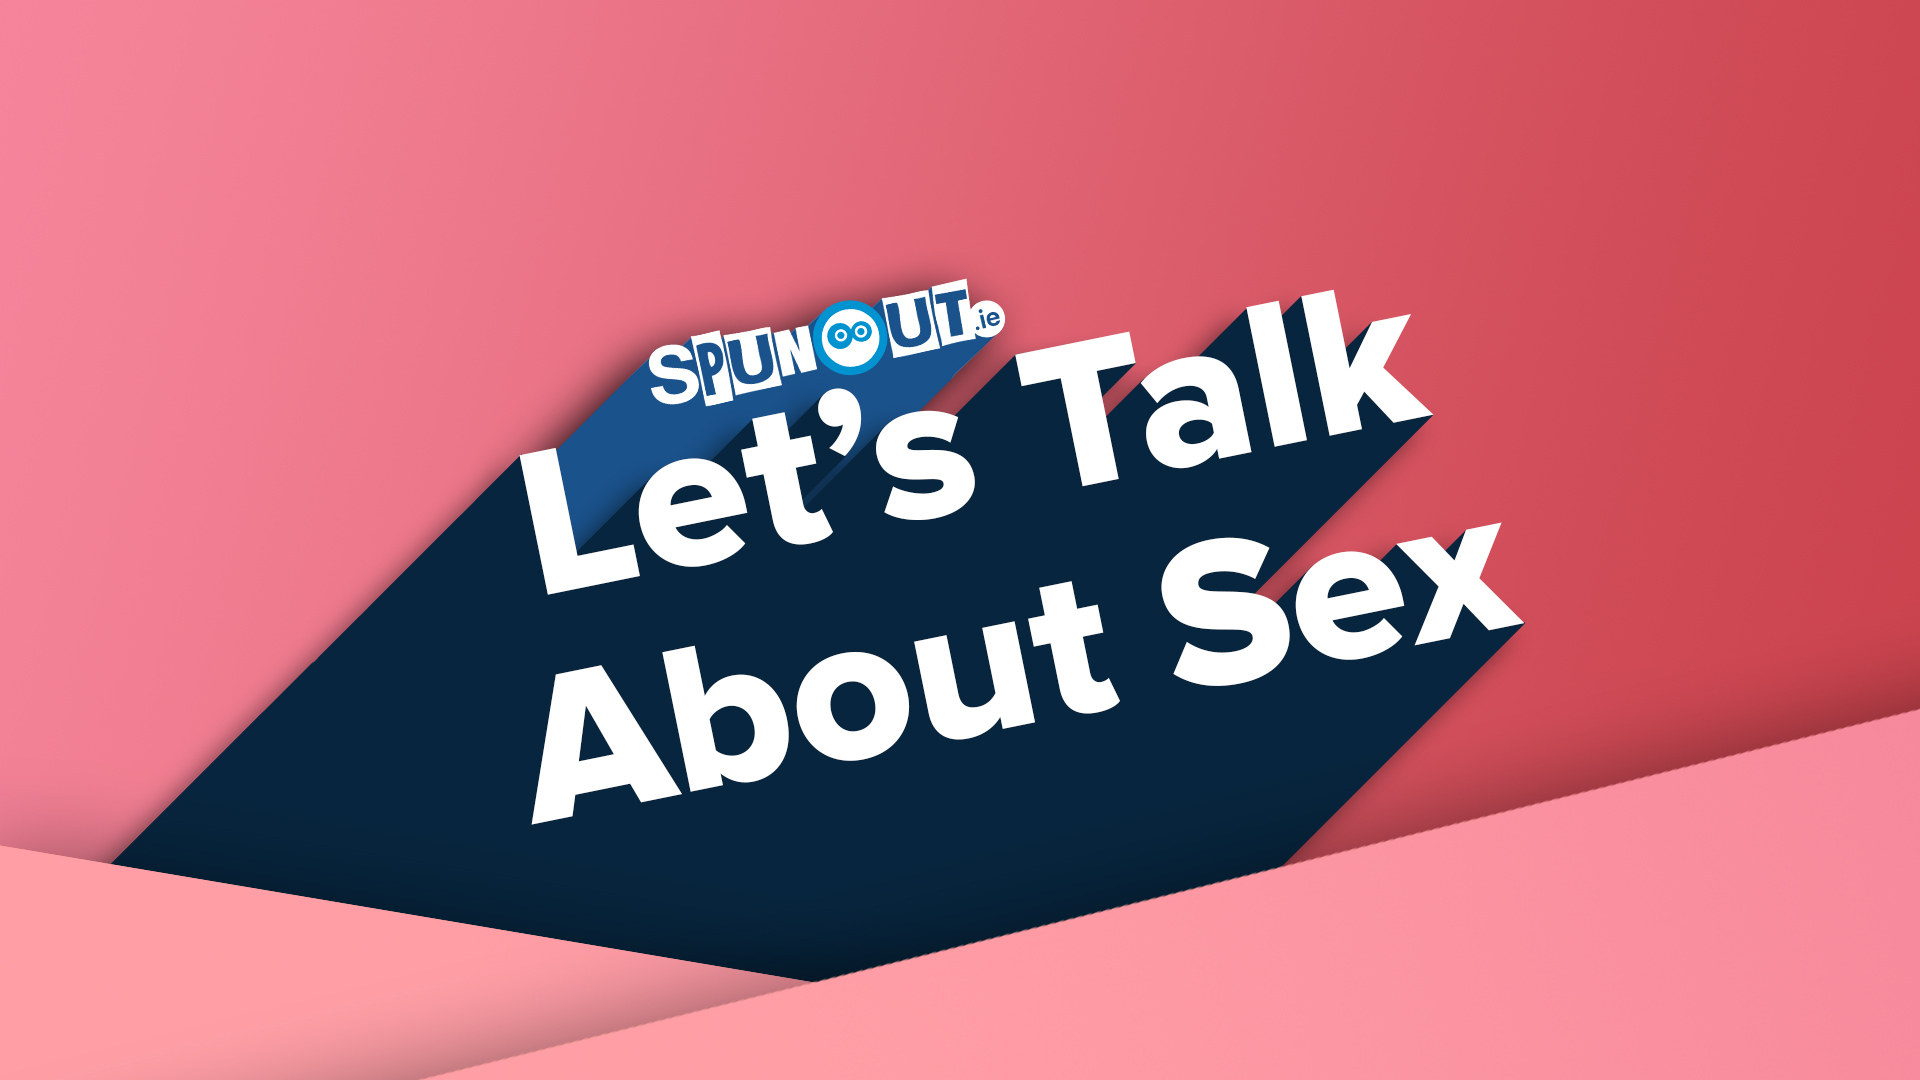 SpunOut.ie launches Let’s Talk About Sex campaign - spunout